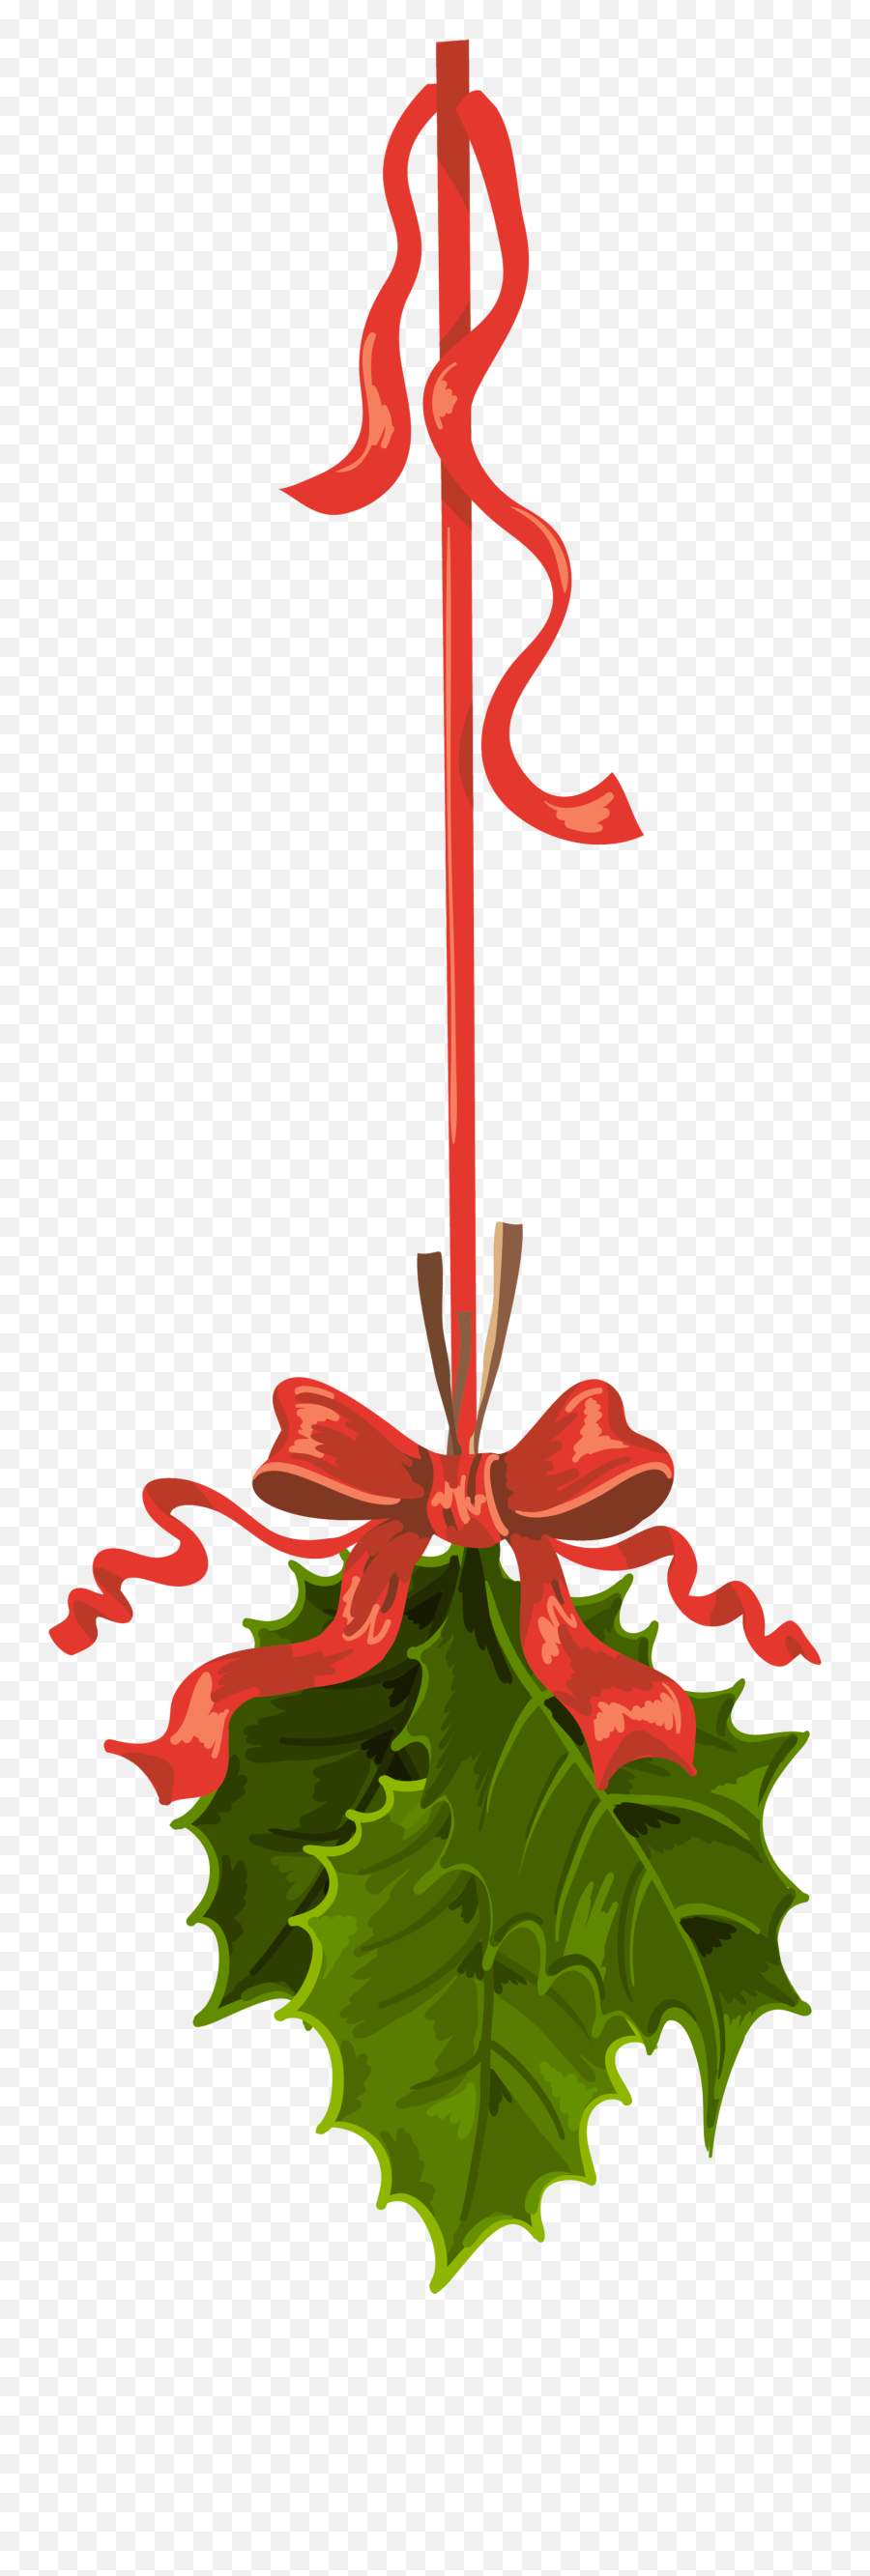 Mistletoe Clipart Clear Background - Christmas Background With Mistletoe Anime Emoji,Mistletoe Clipart